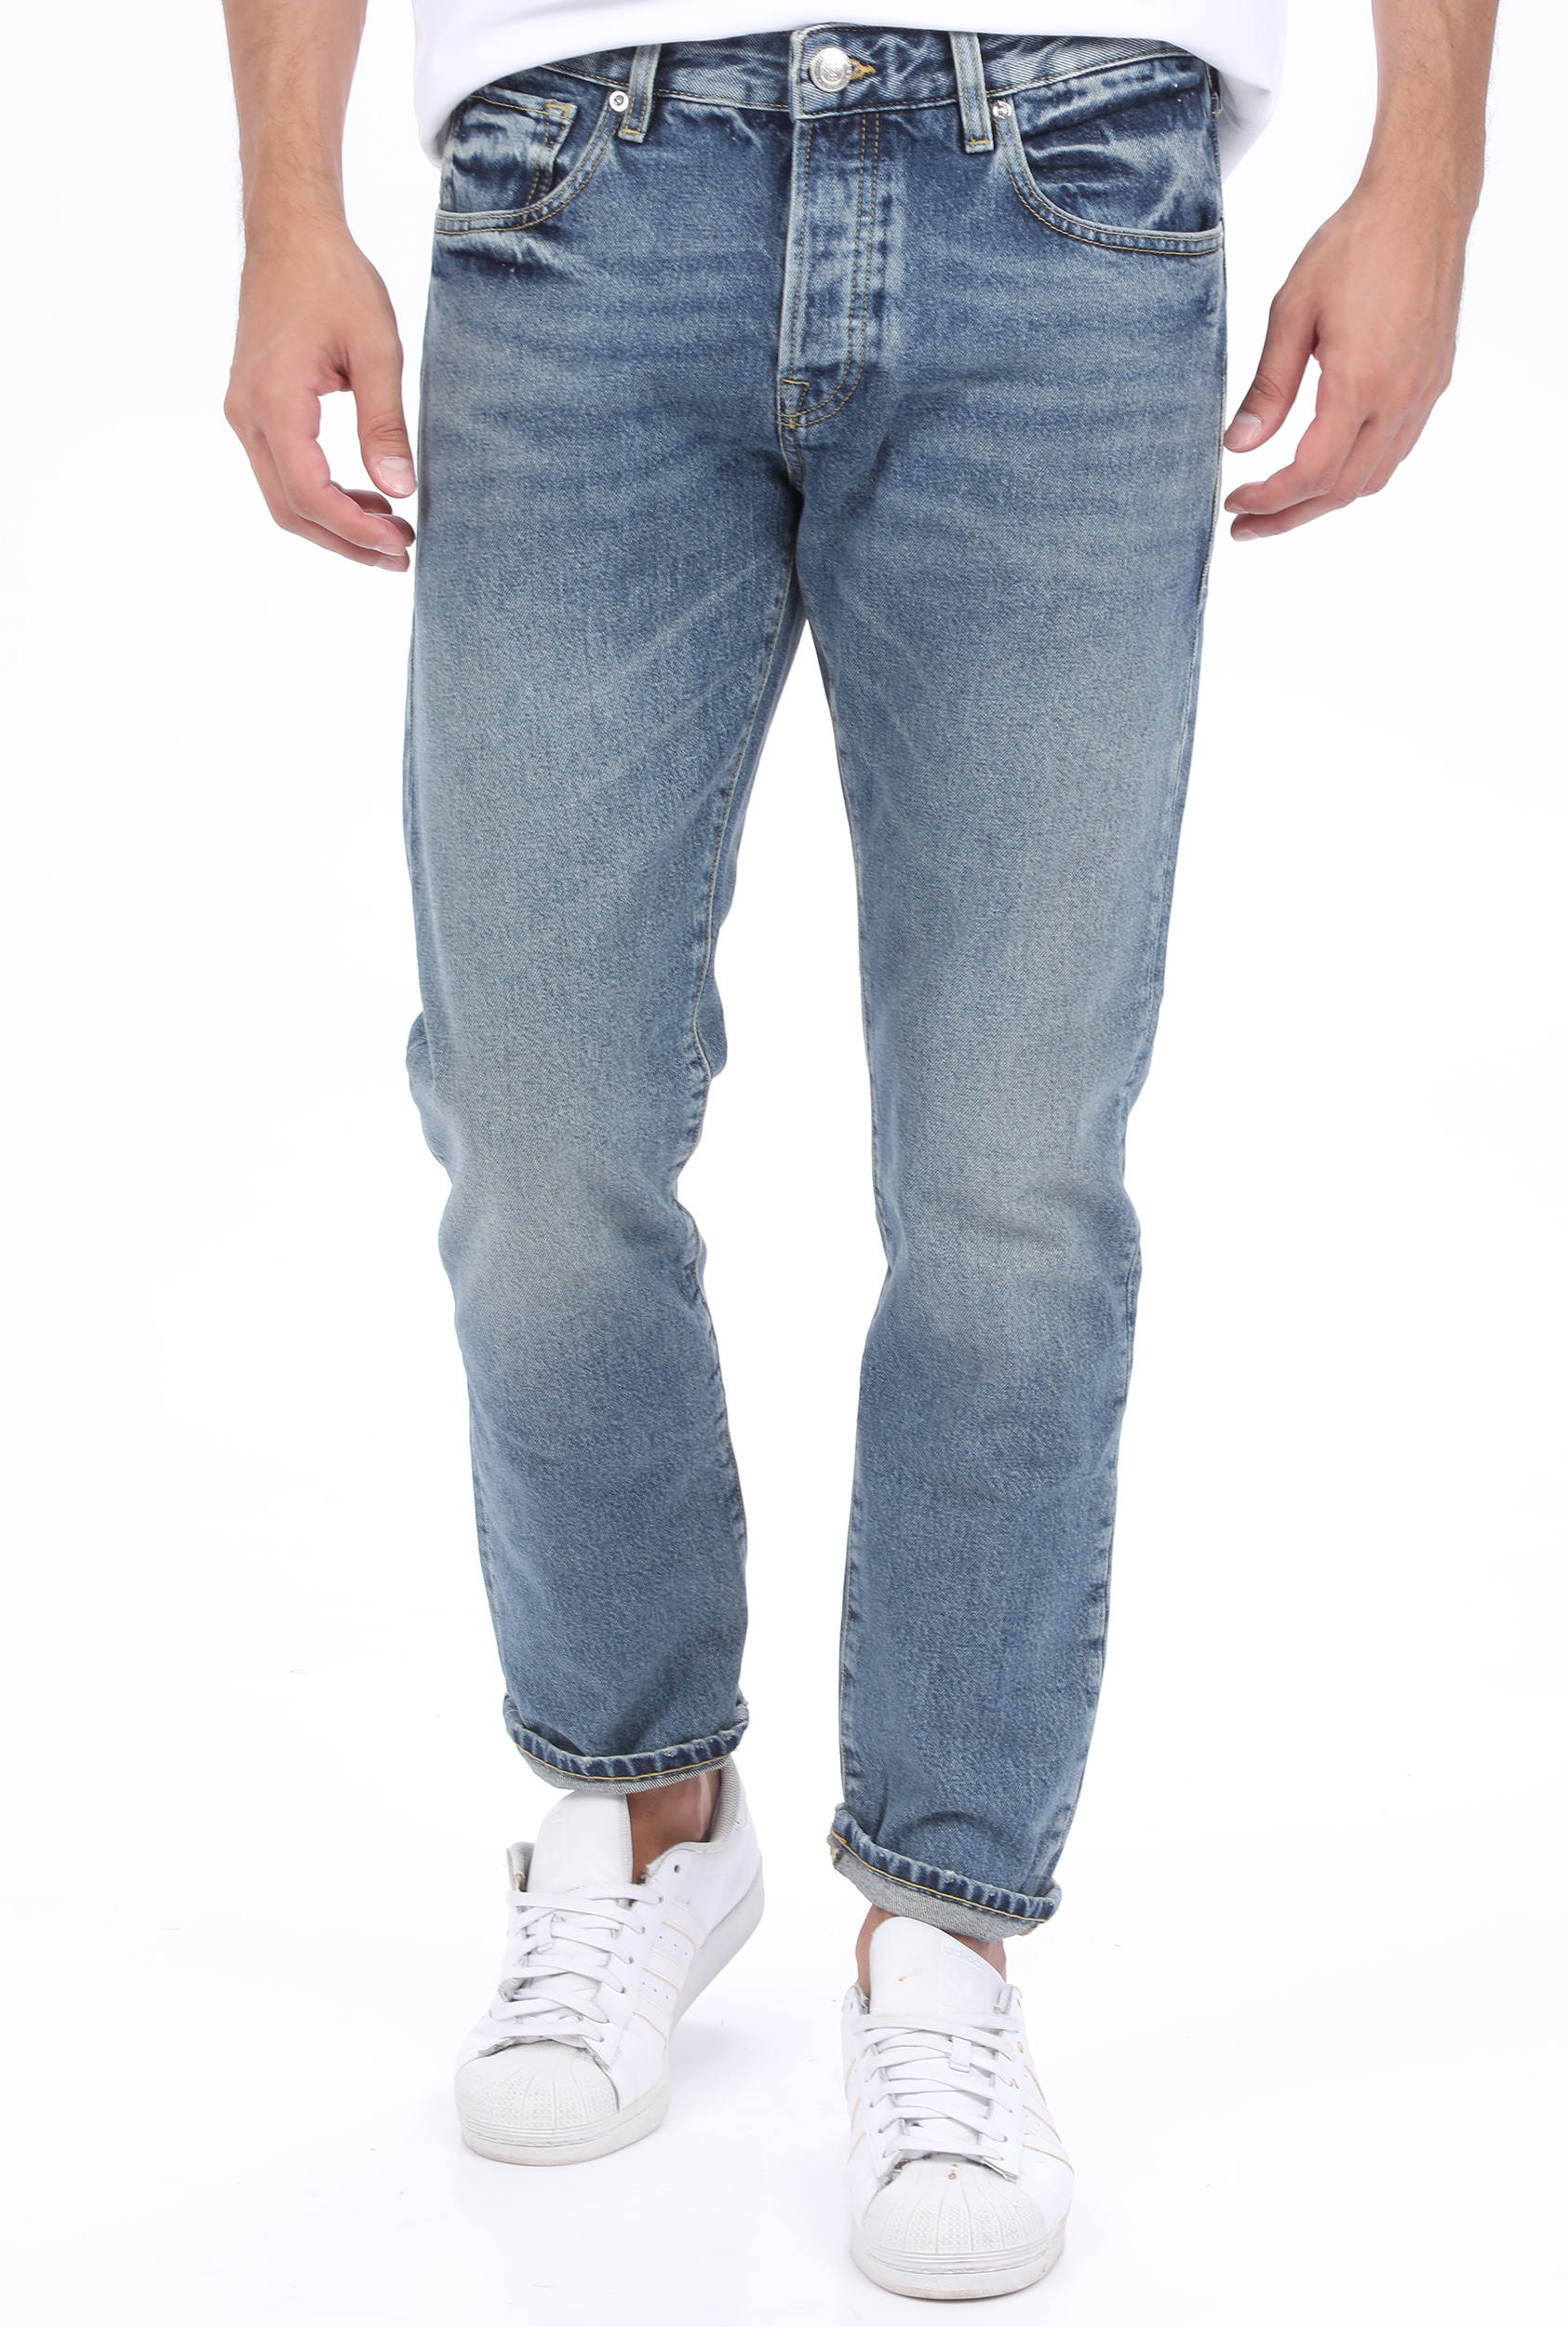 Ανδρικά/Ρούχα/Τζίν/Skinny SCOTCH & SODA - Ανδρικό jean παντελόνι SCOTCH & SODA Lot 22 Ralston Cropped - organ μπλε